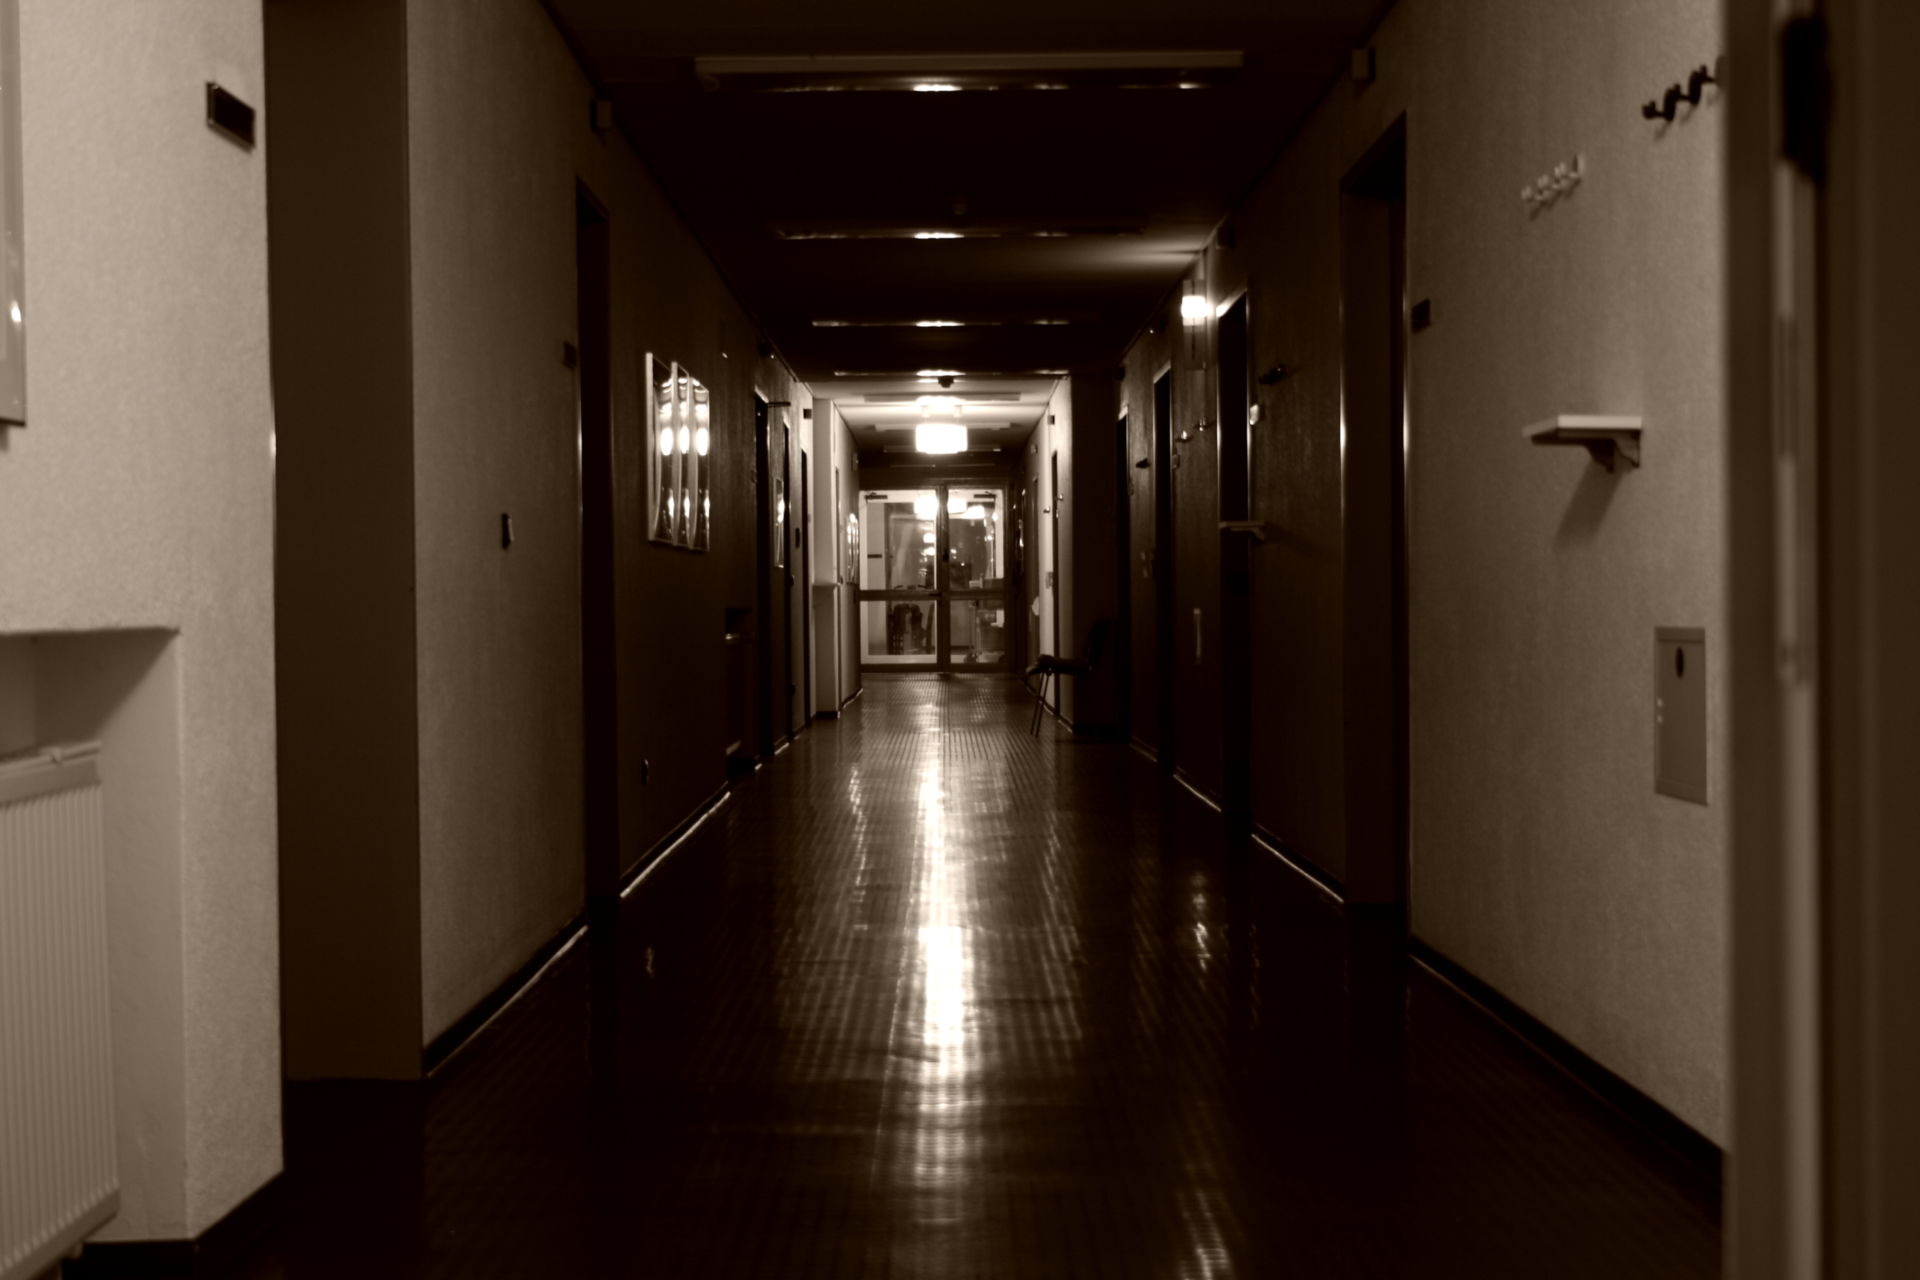 Clinical corridor